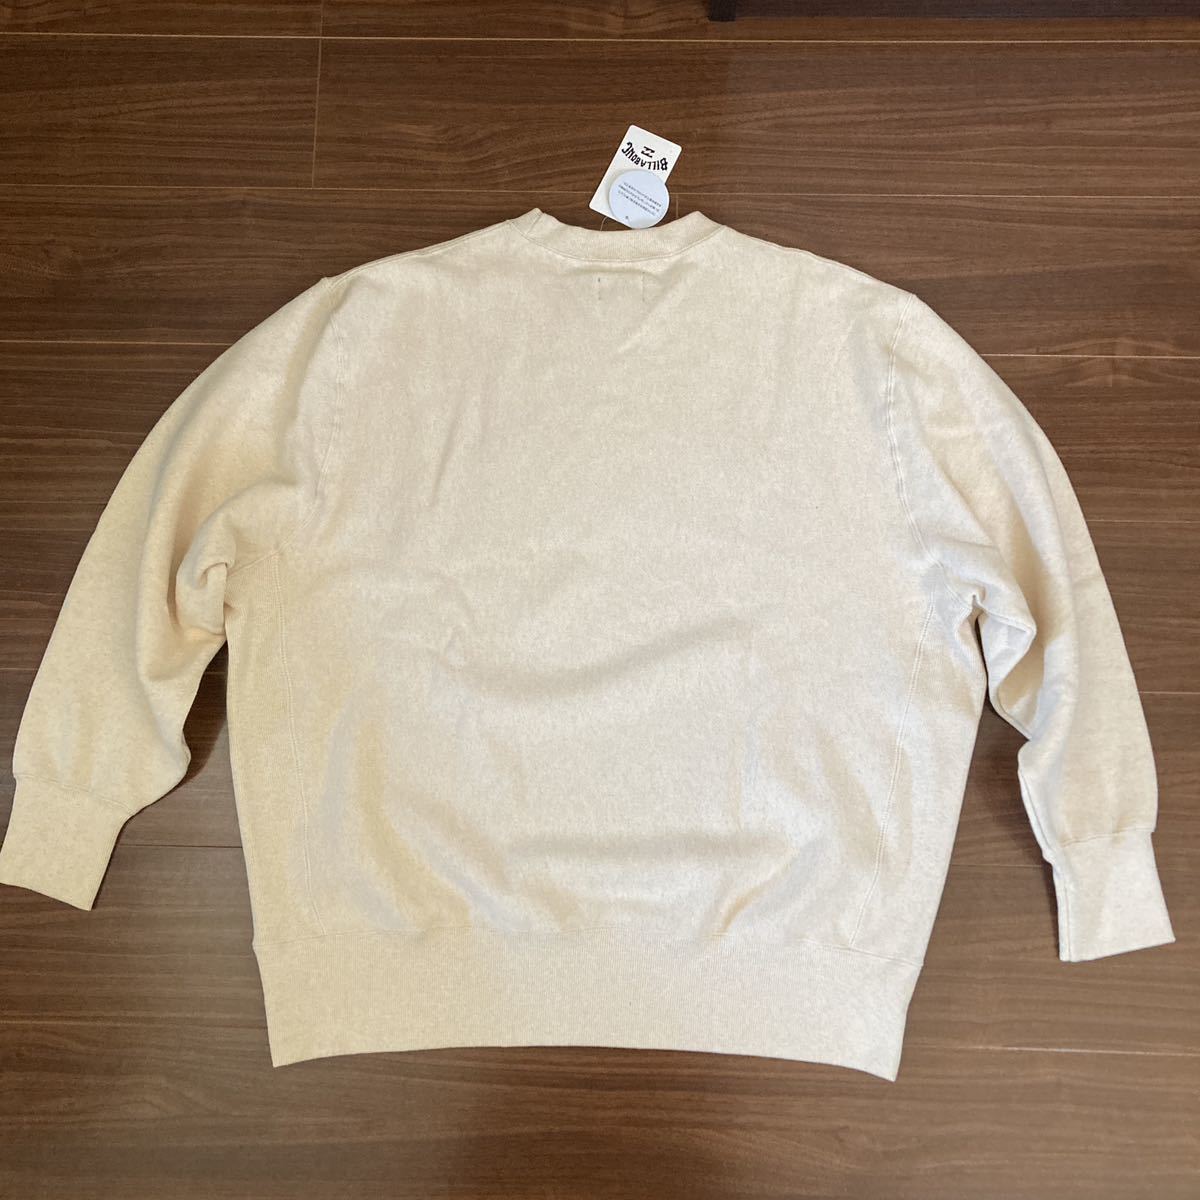  tag equipped BILLABONG Billabong sweatshirt beige XL